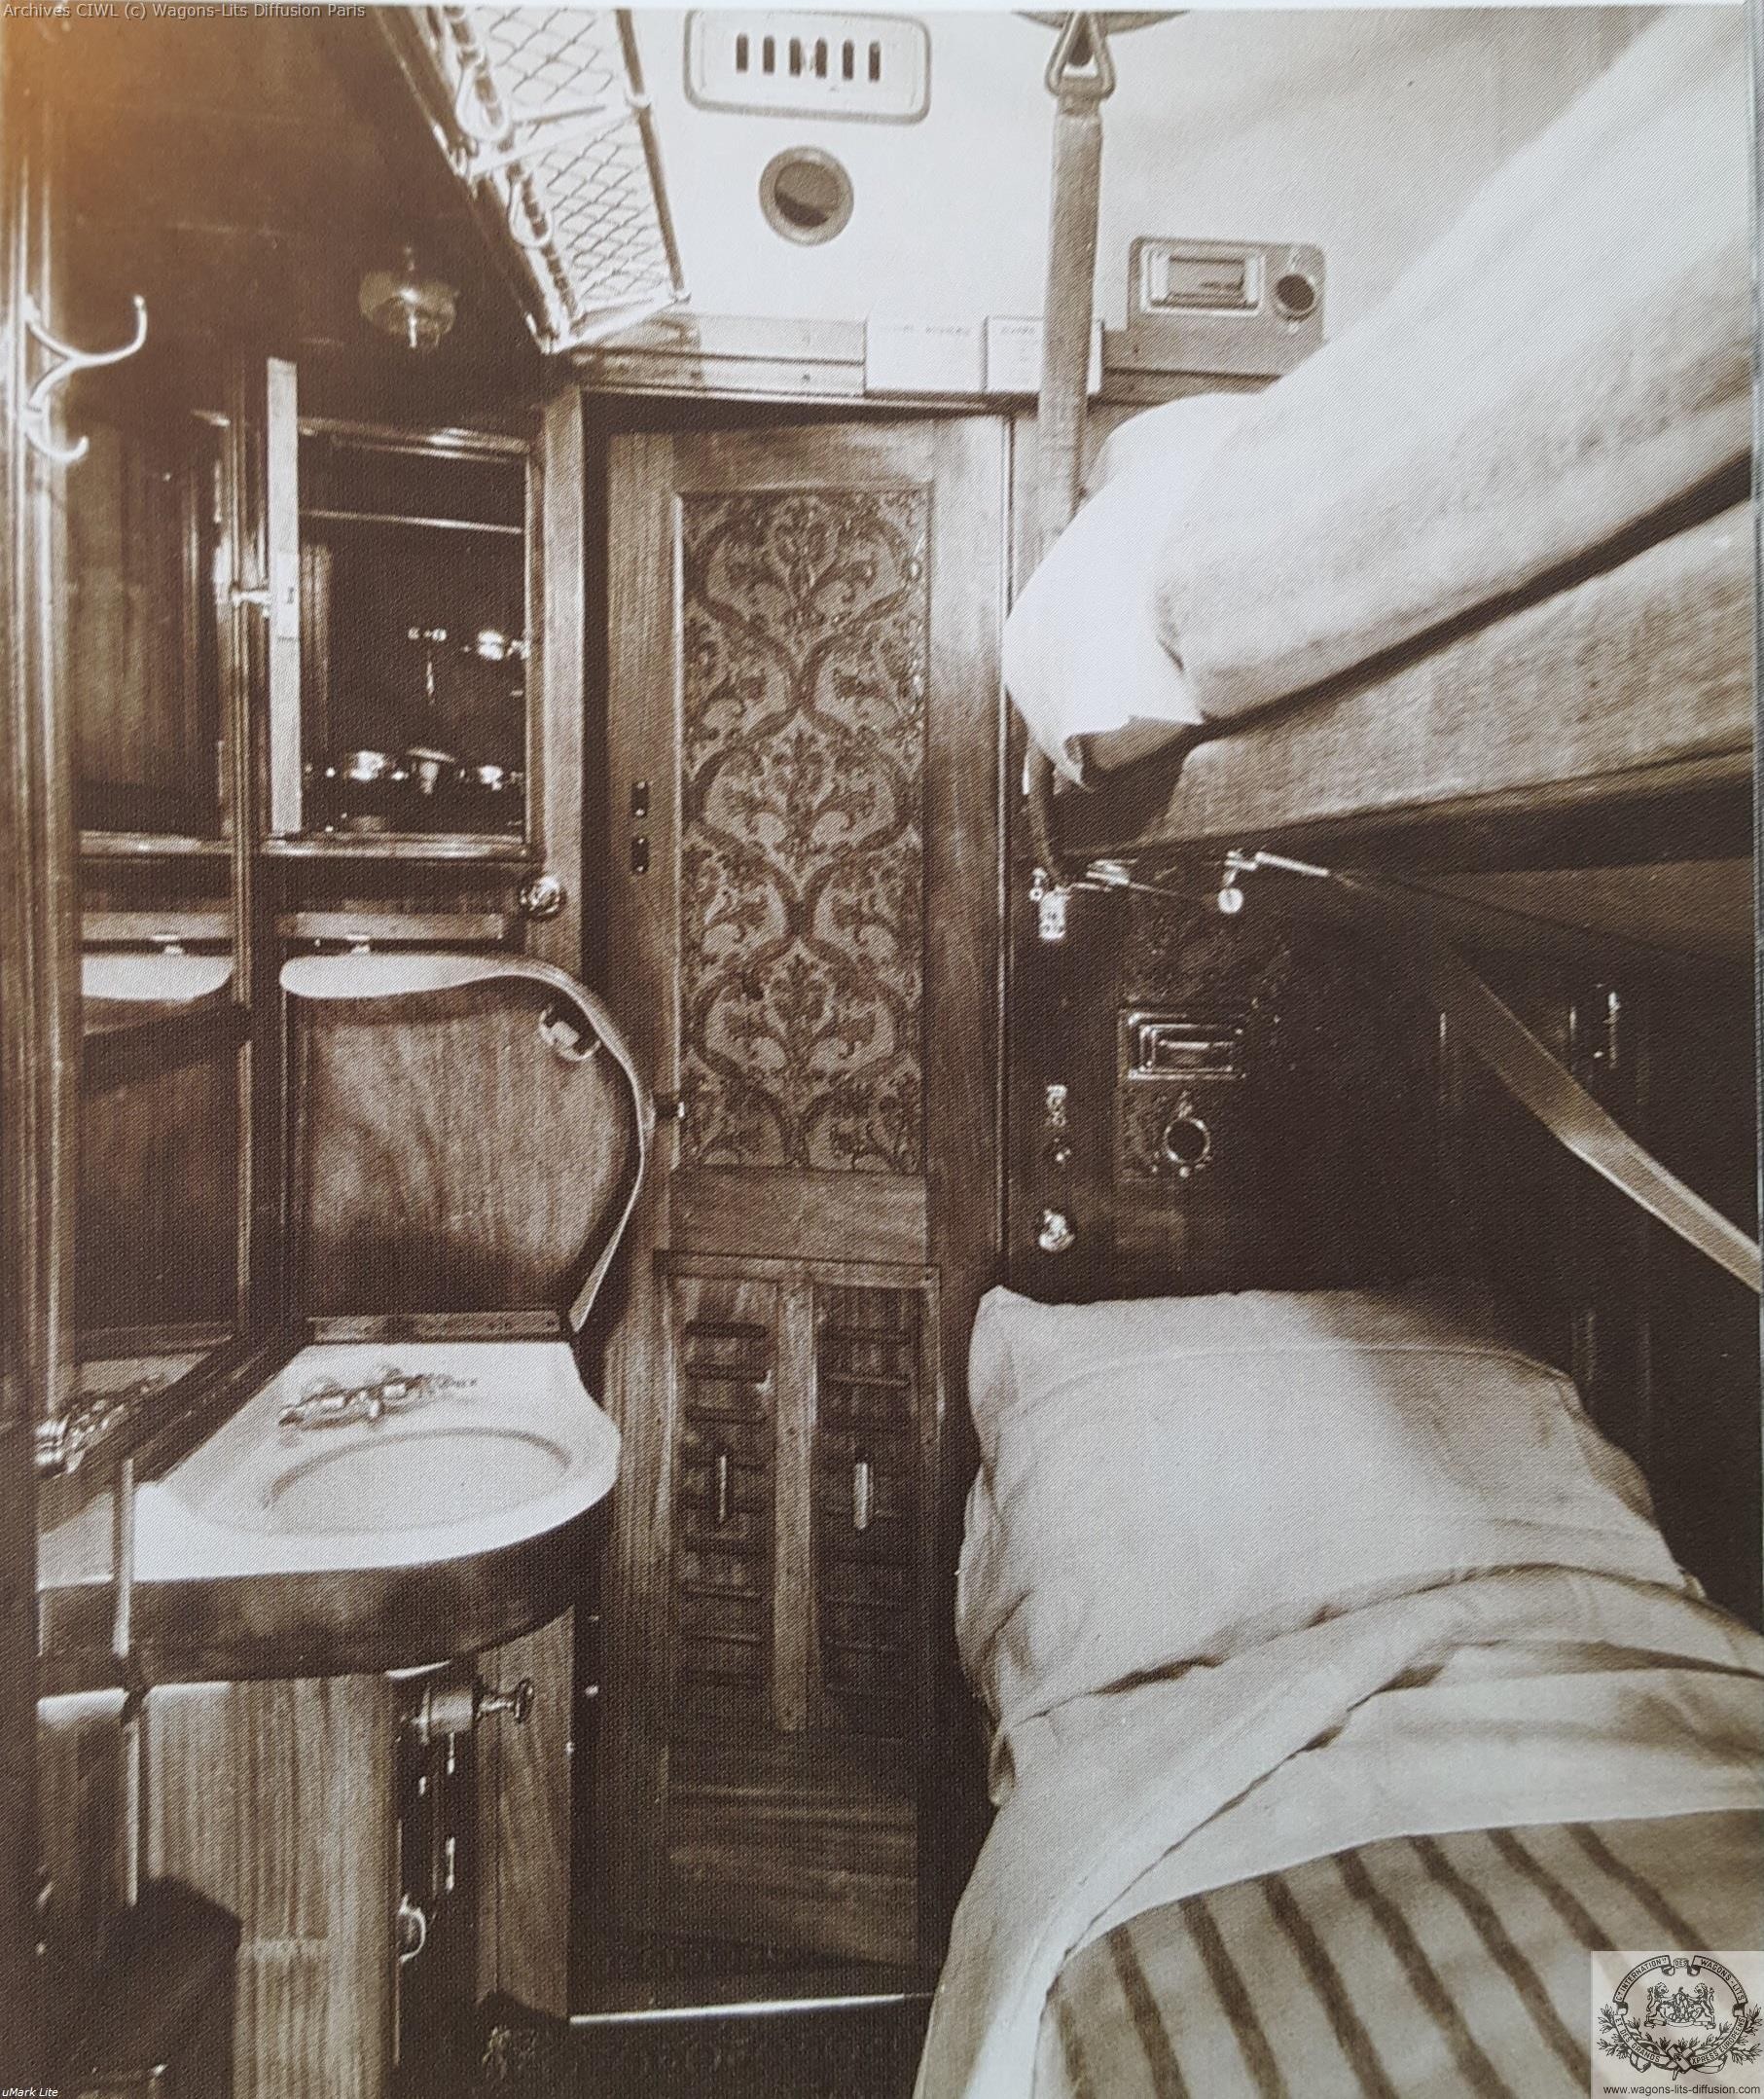 Wl interieur compartiment vers 1900